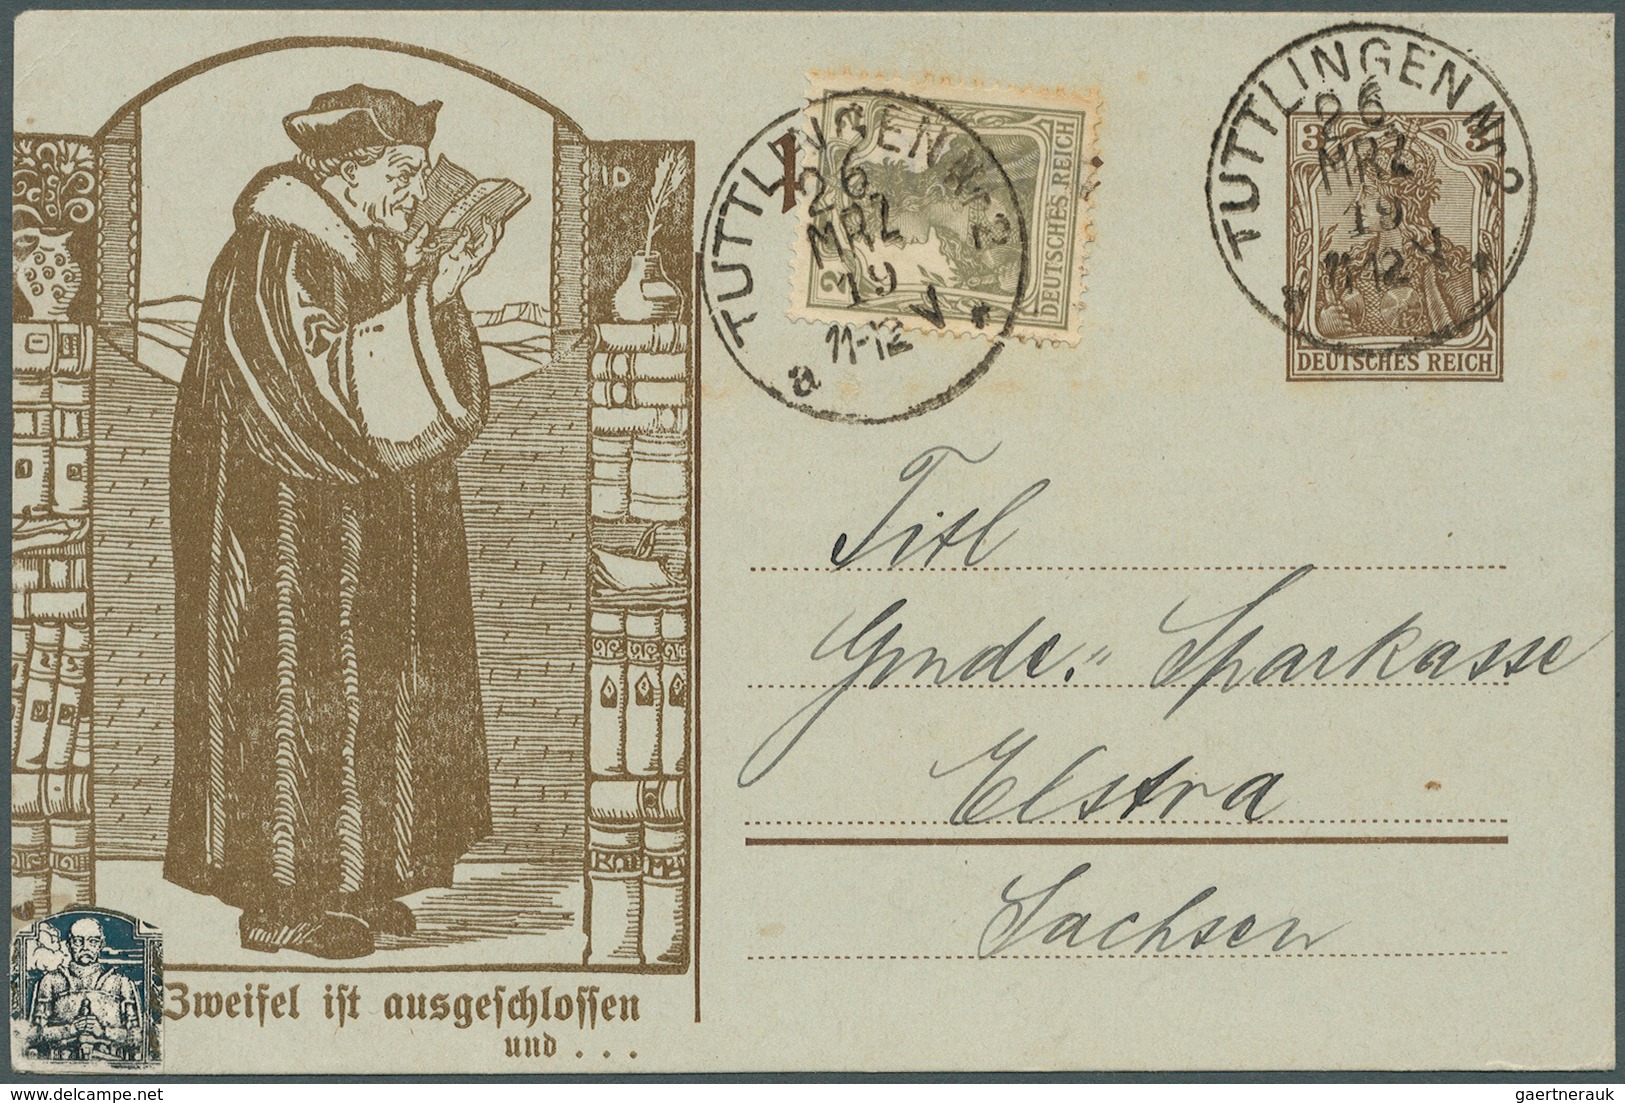 31772 Deutsches Reich - Ganzsachen: 1900/1915, Posten von 345 Privat-Postkarten aus PP 11 bis PP 23, ungeb